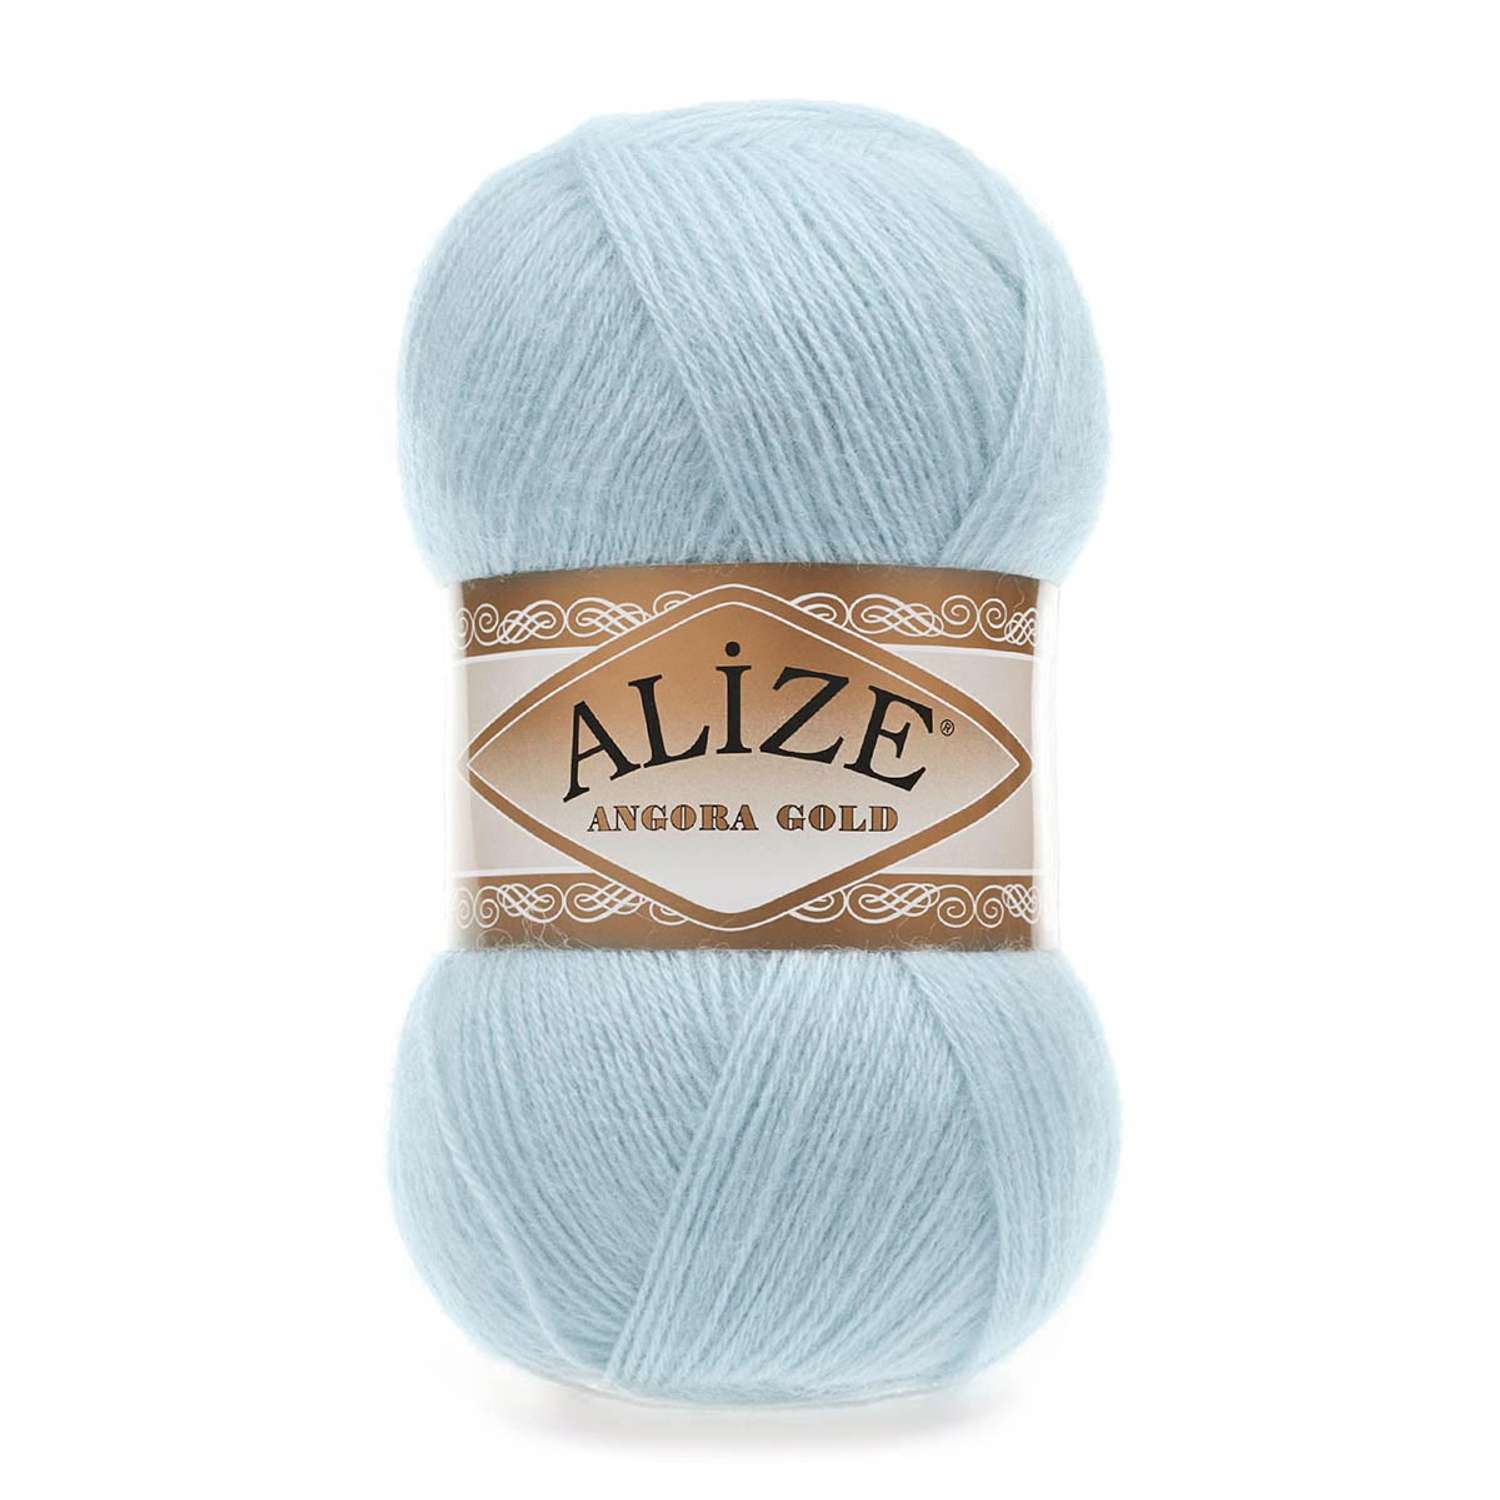 Пряжа Alize мягкая теплая для шарфов кардиганов Angora Gold 100 гр 550 м 5 мотков 514 голубой лед - фото 6